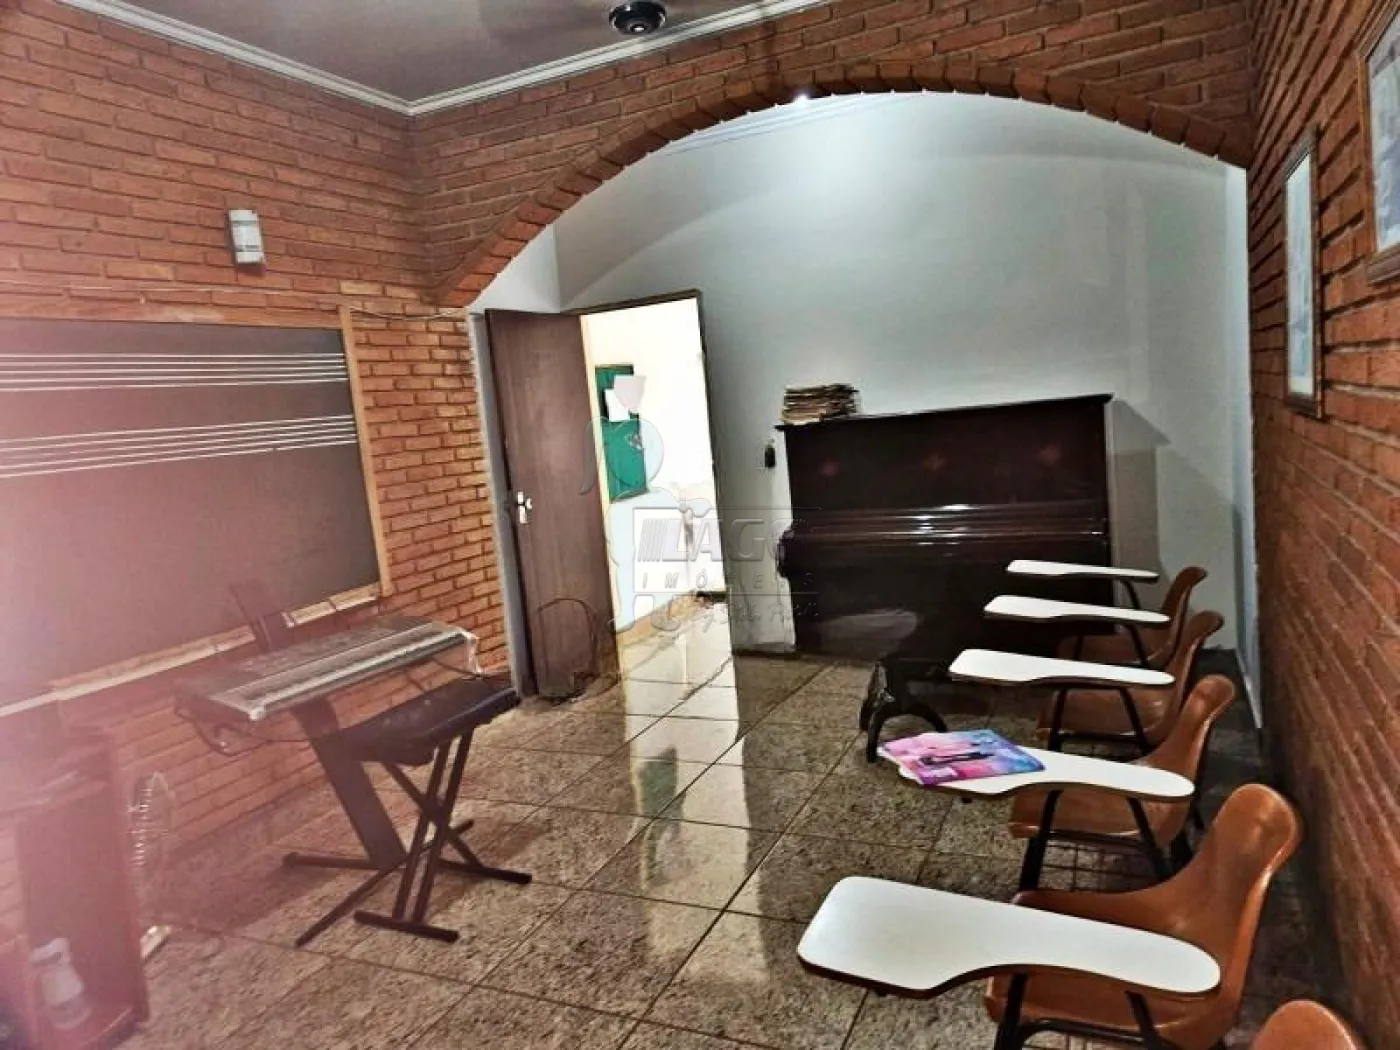 Alugar Casas / Padrão em Ribeirão Preto R$ 2.500,00 - Foto 11